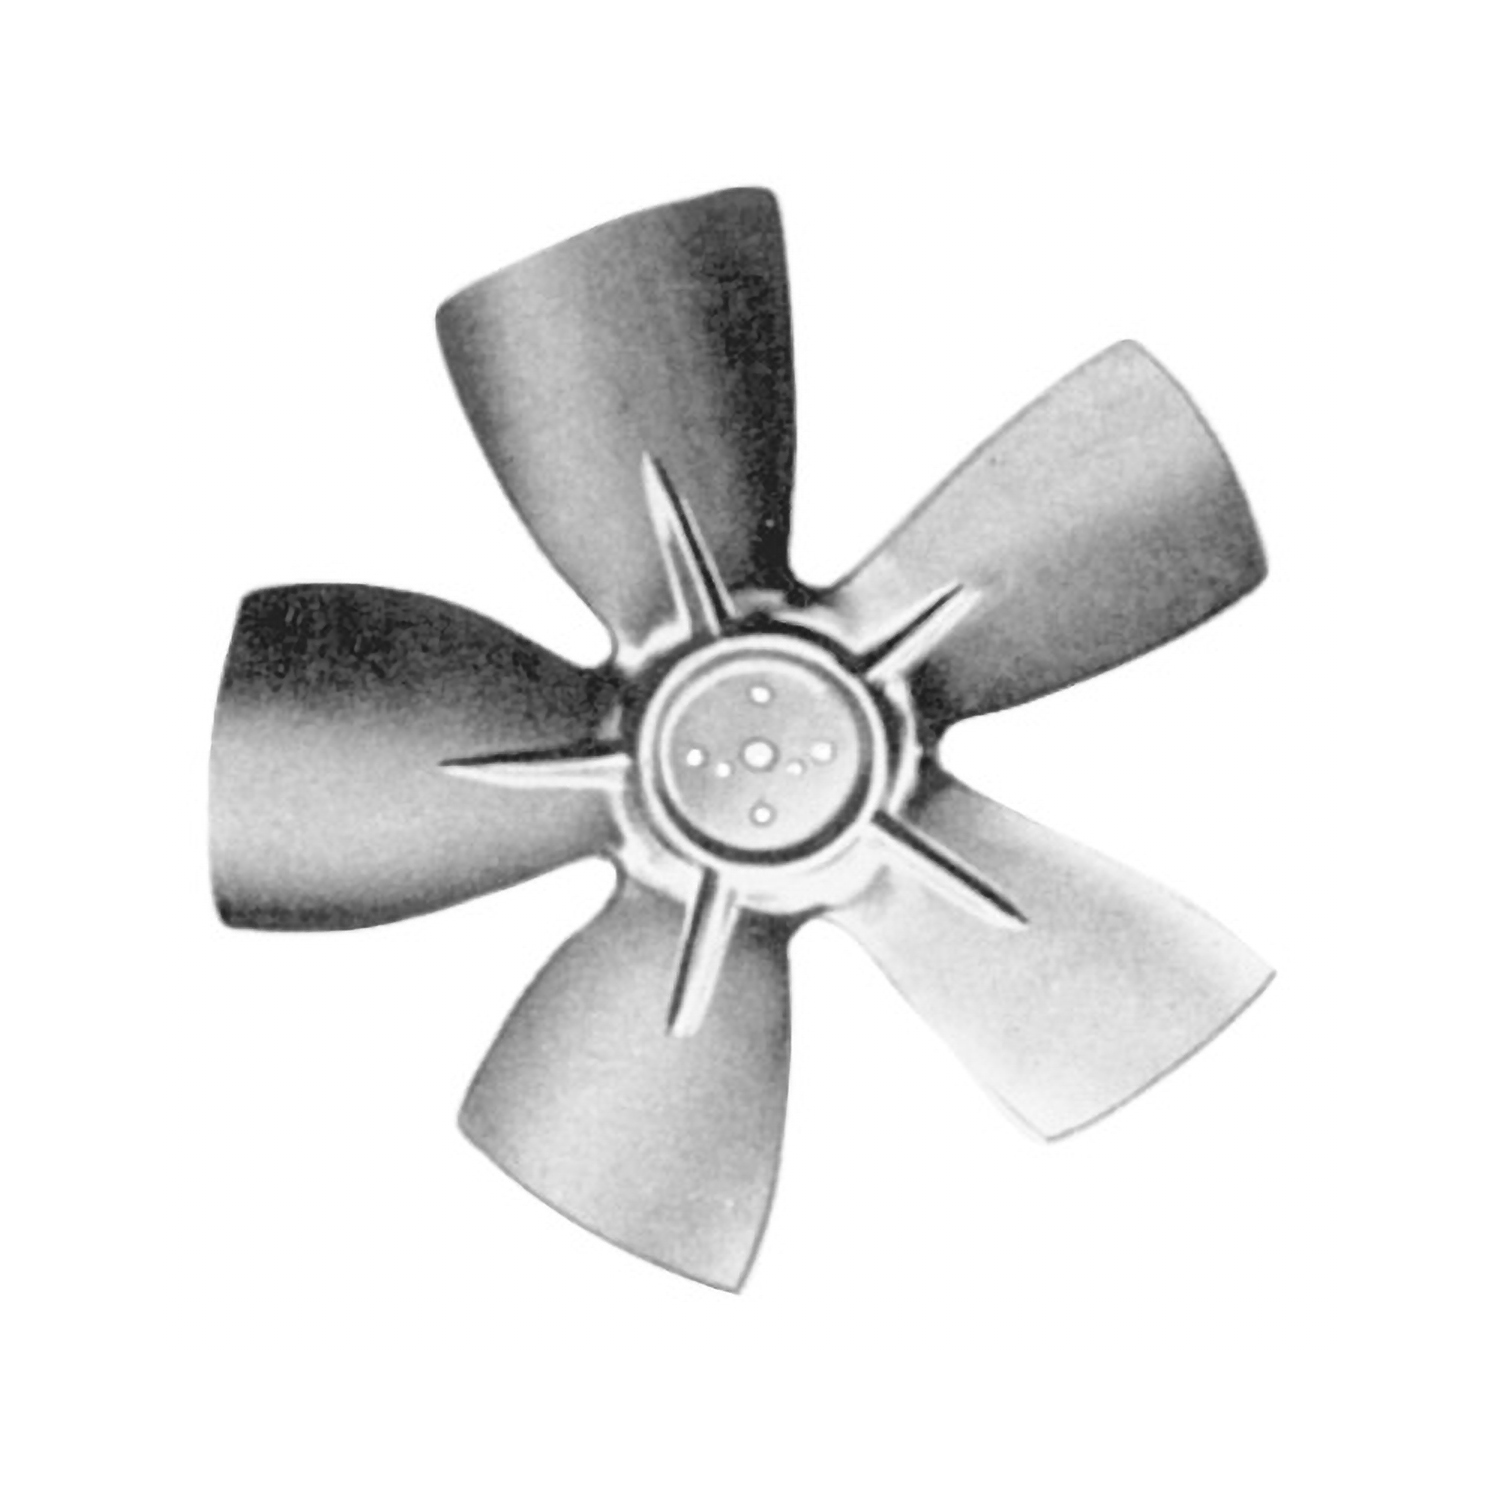 efterspørgsel Let at læse reb Hubless Small Aluminum Fan Blade 9" Diameter CW Rotation | Packard Online